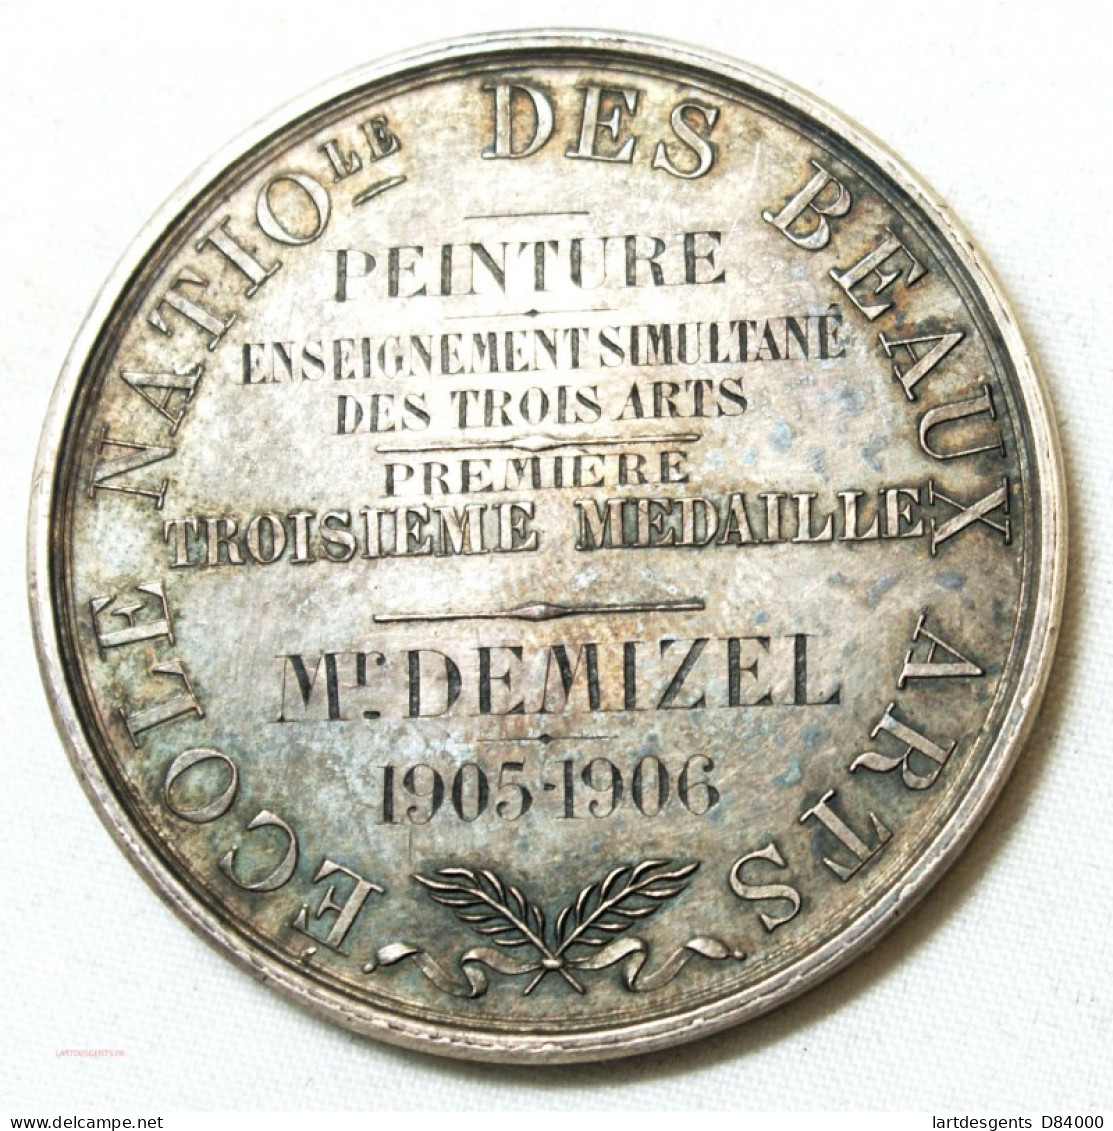 MEDAILLE Ecole Des Beaux Arts Décernée à M. DEMIZEL 1905-06 Par E. GATTEAUX. F. - Firma's